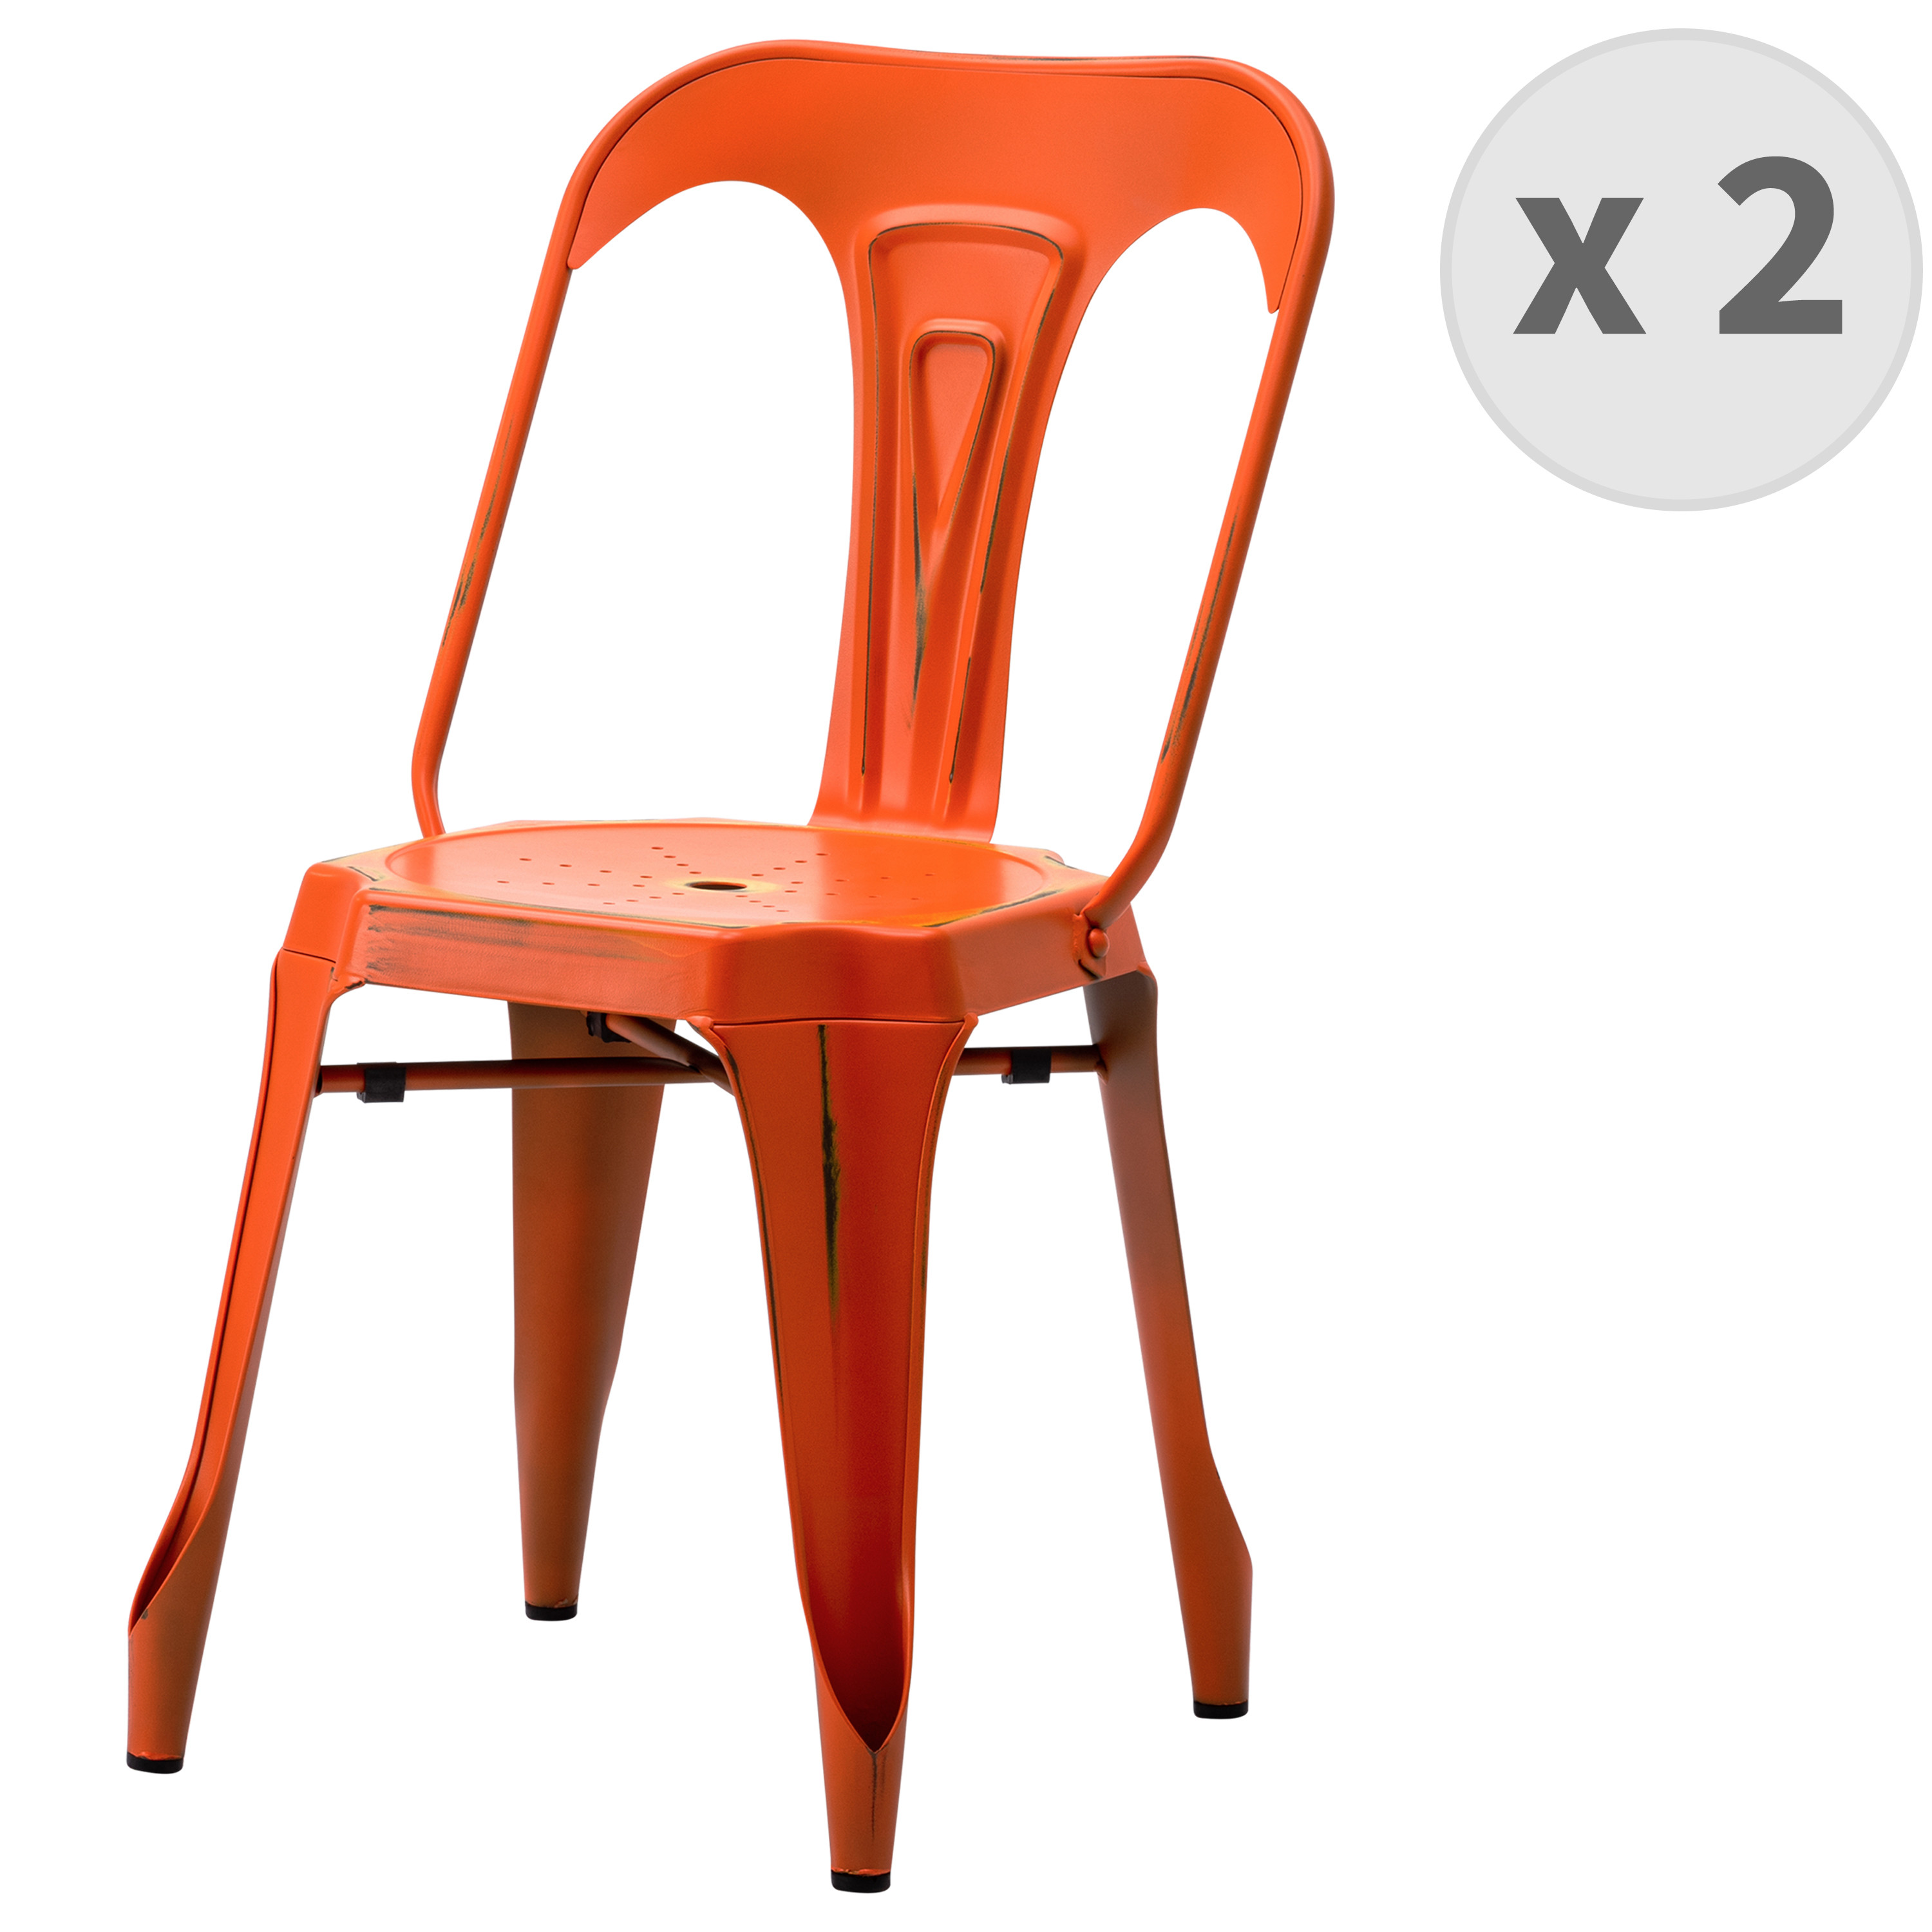 Chaise industrielle métal orange patiné (x2)